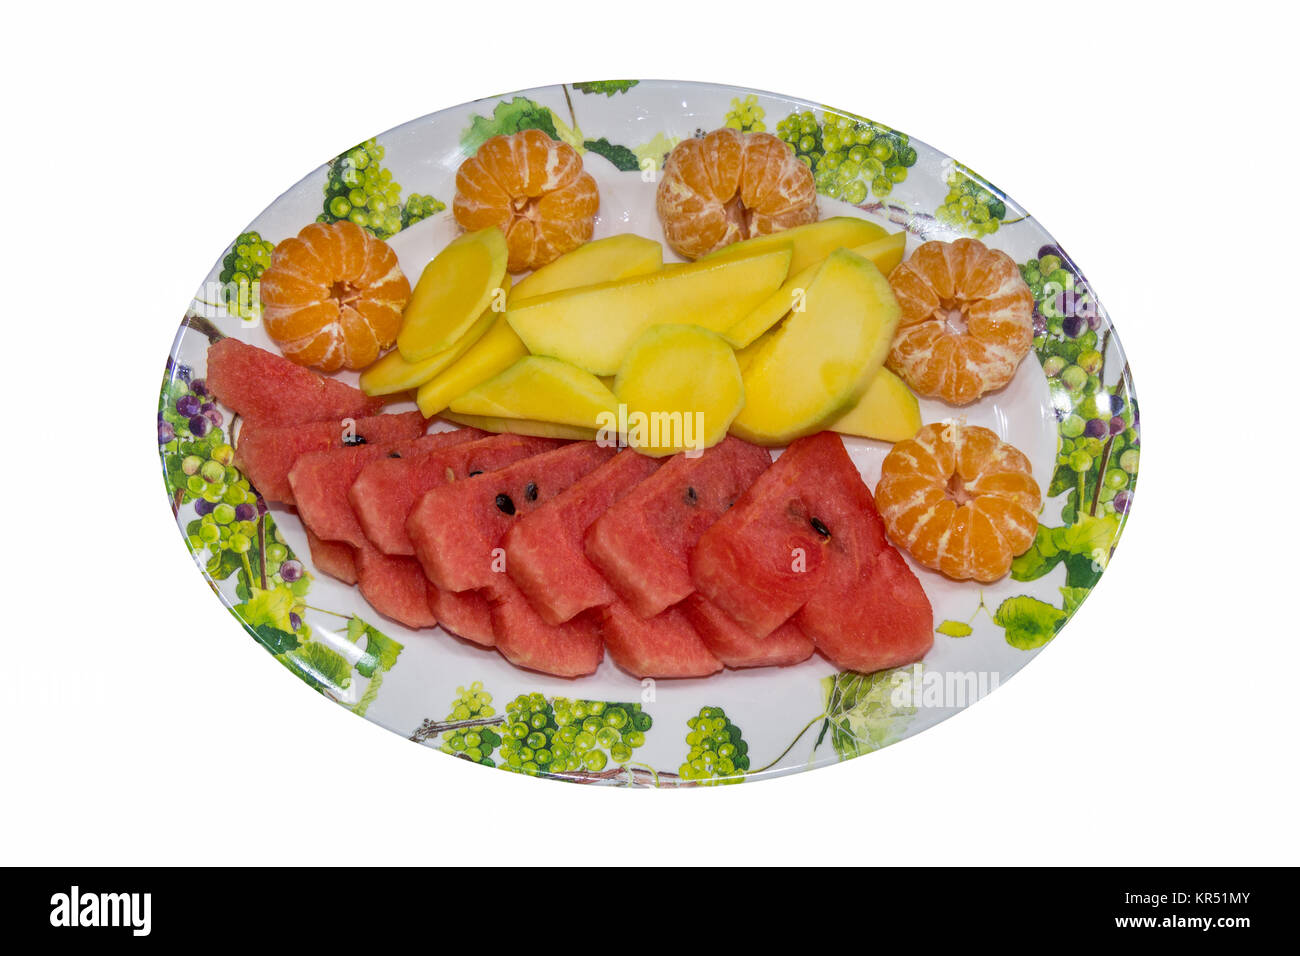 Platte von Obst - Mandarinen, Mango, Wassermelone auf weißem Hintergrund Stockfoto